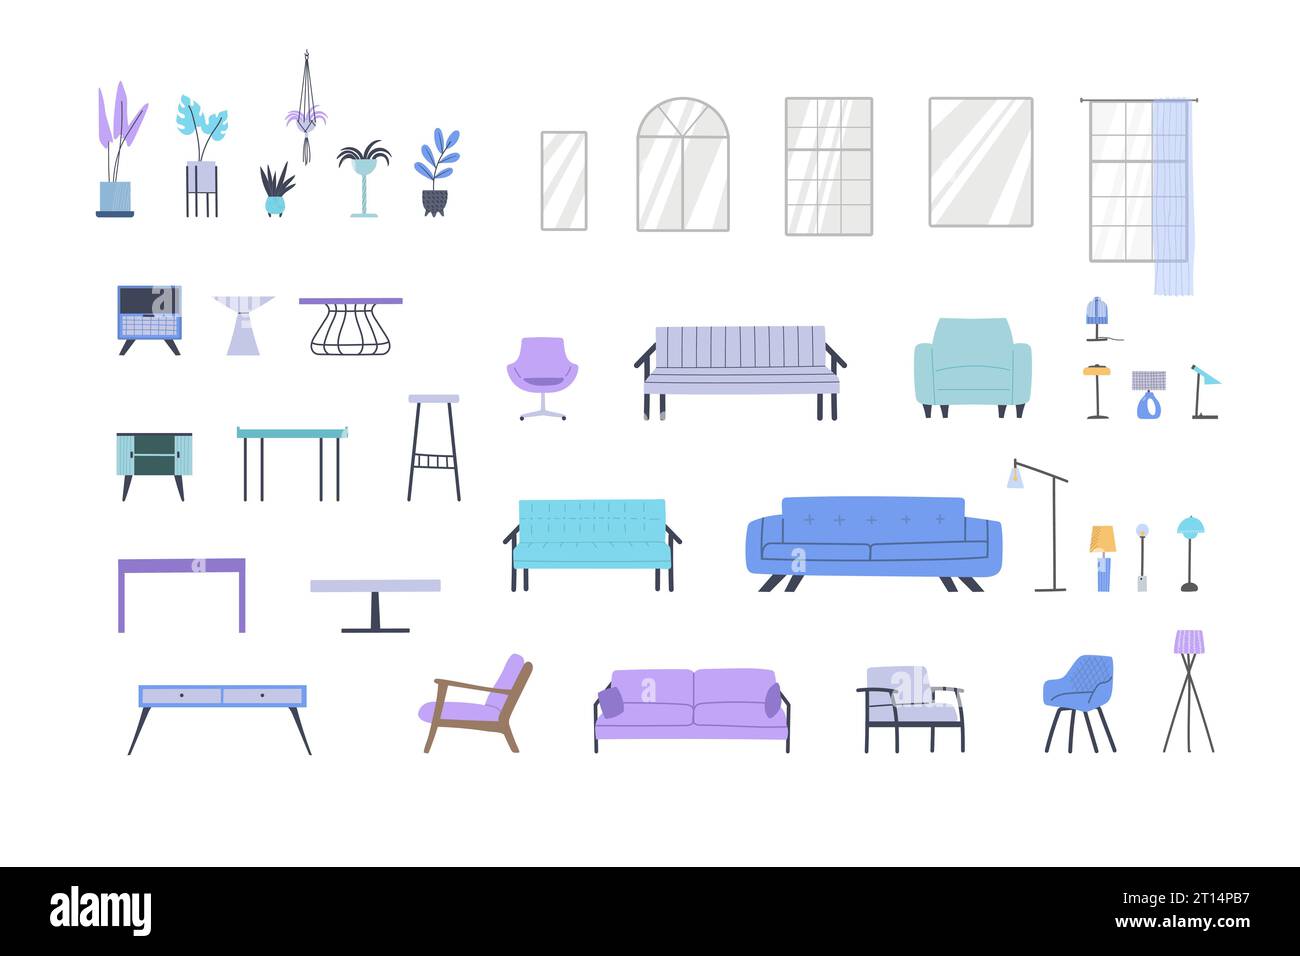 Ensemble de meubles de canapés, fauteuils, tables, tiroirs, lampes, fenêtres, pots de fleurs pour la construction de designs intérieurs. Illustration de Vecteur